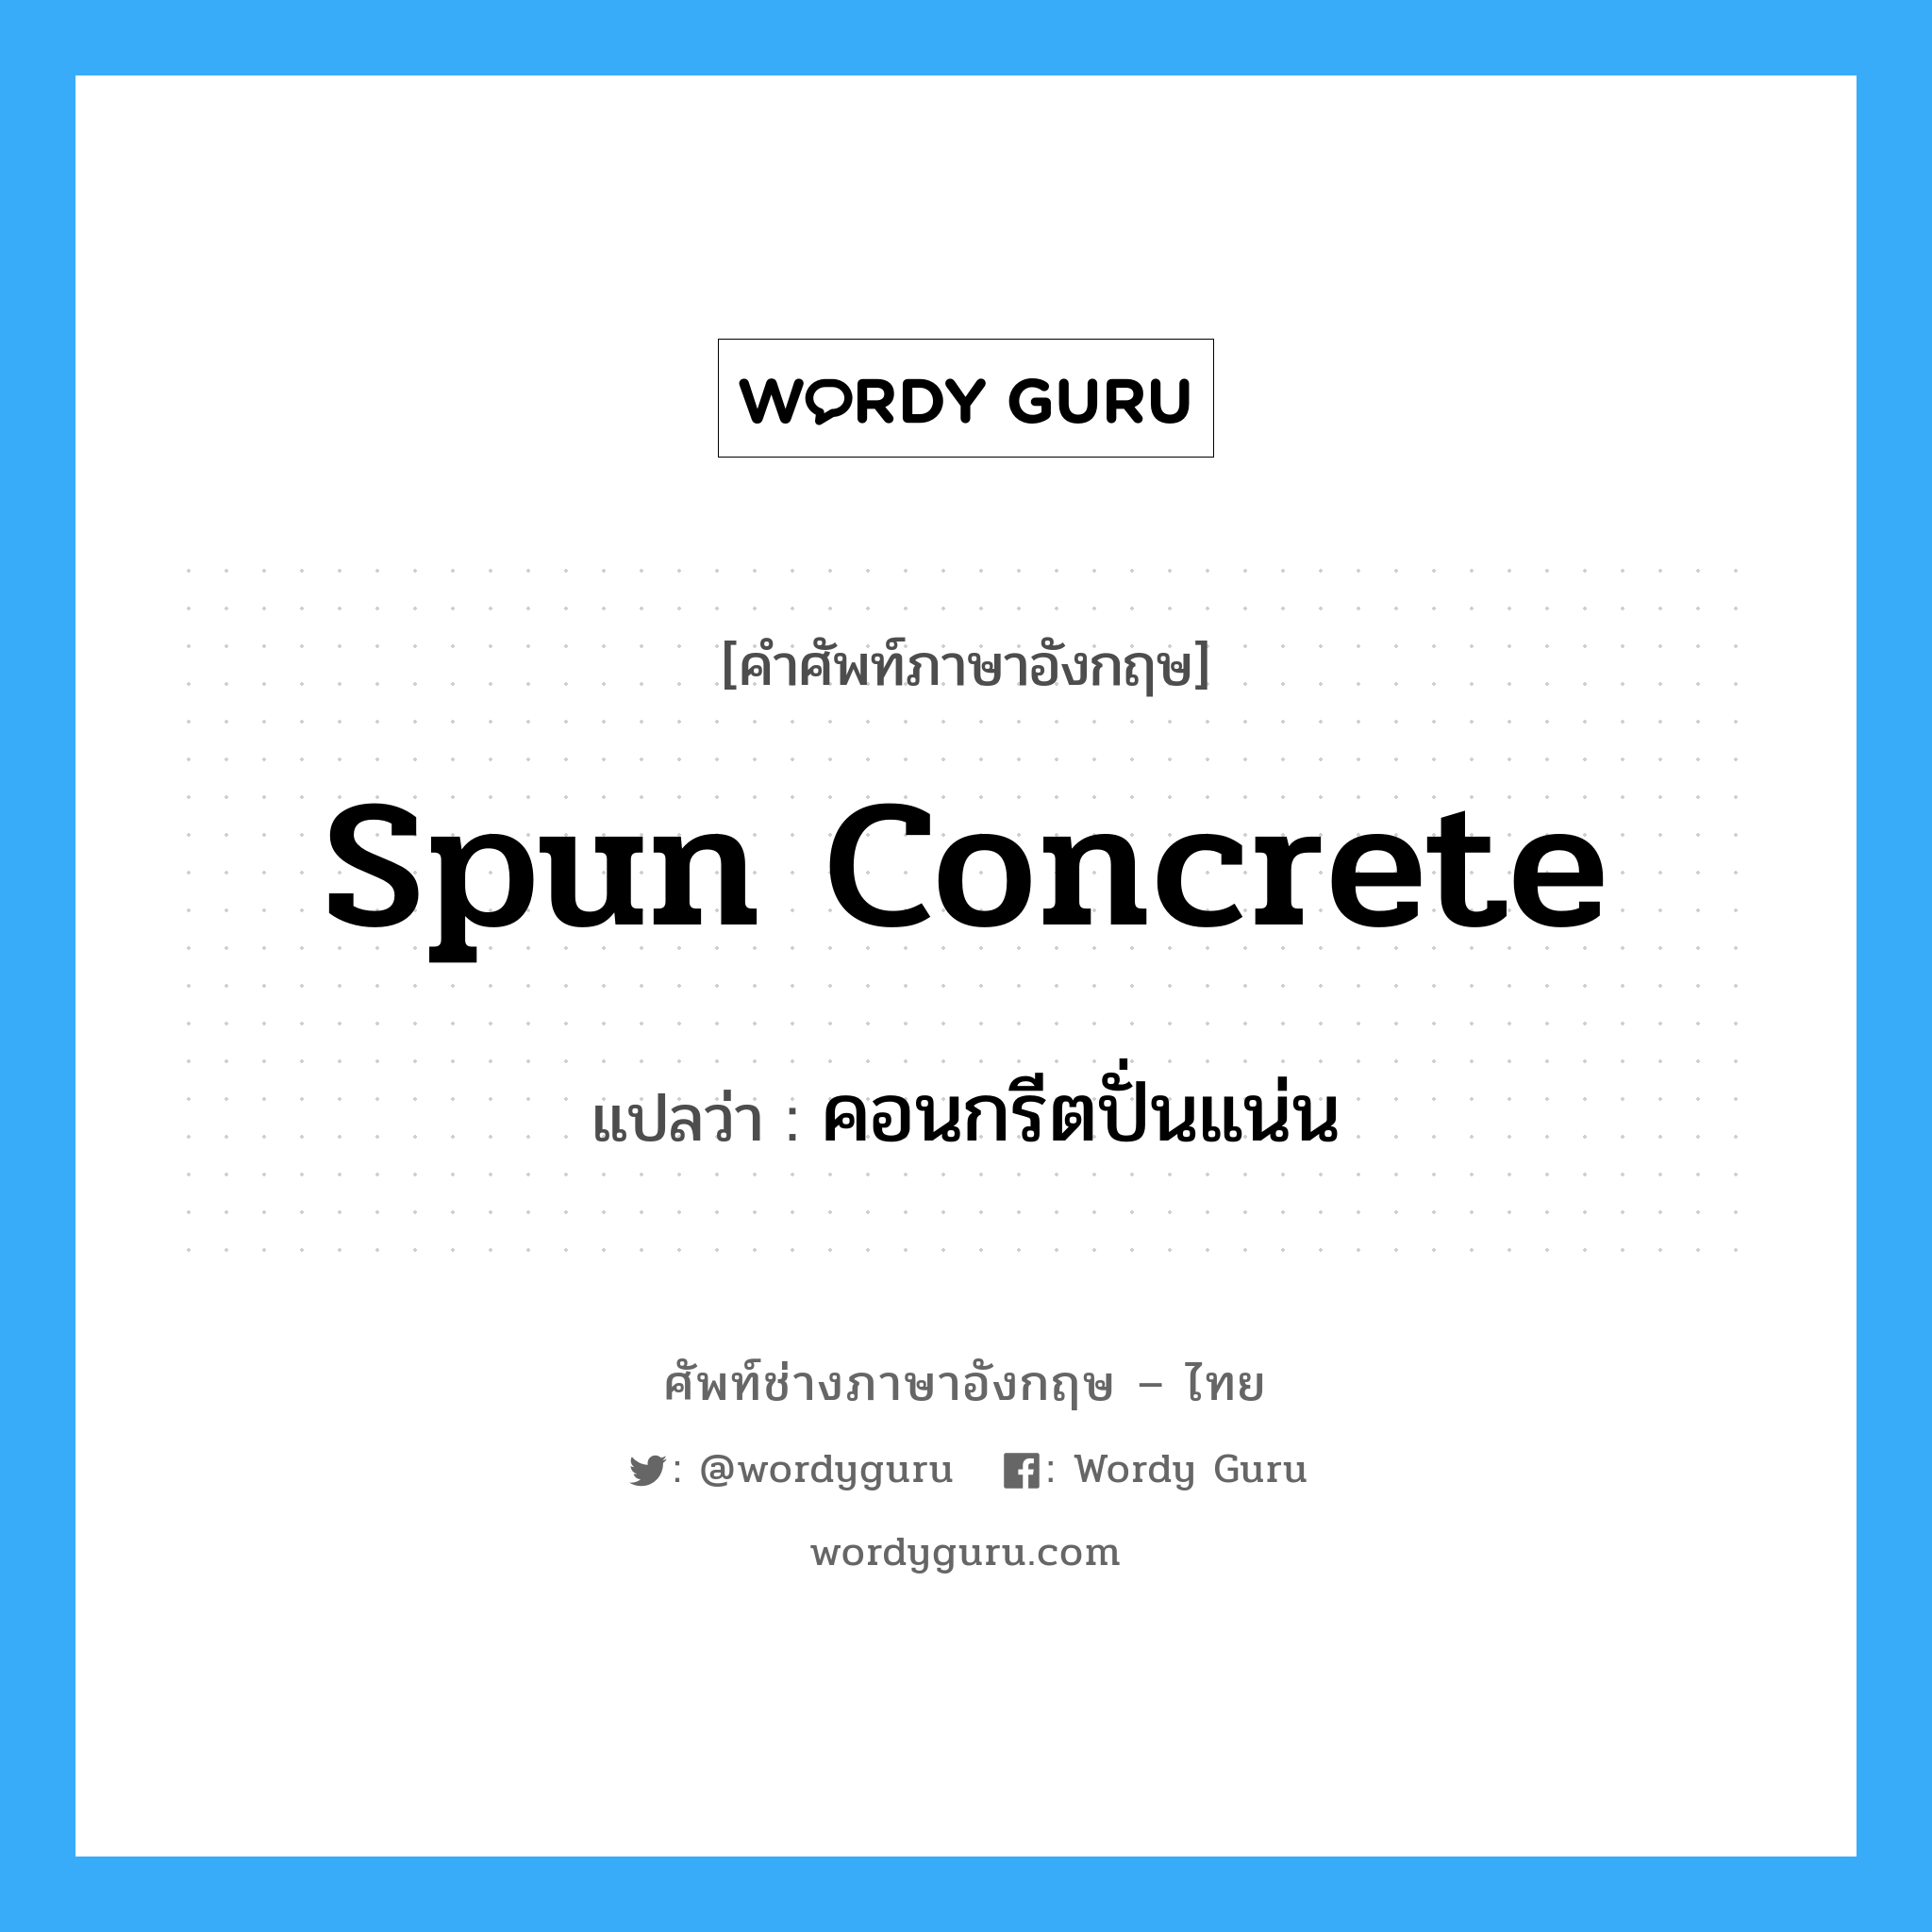 คอนกรีตปั่นแน่น ภาษาอังกฤษ?, คำศัพท์ช่างภาษาอังกฤษ - ไทย คอนกรีตปั่นแน่น คำศัพท์ภาษาอังกฤษ คอนกรีตปั่นแน่น แปลว่า spun concrete